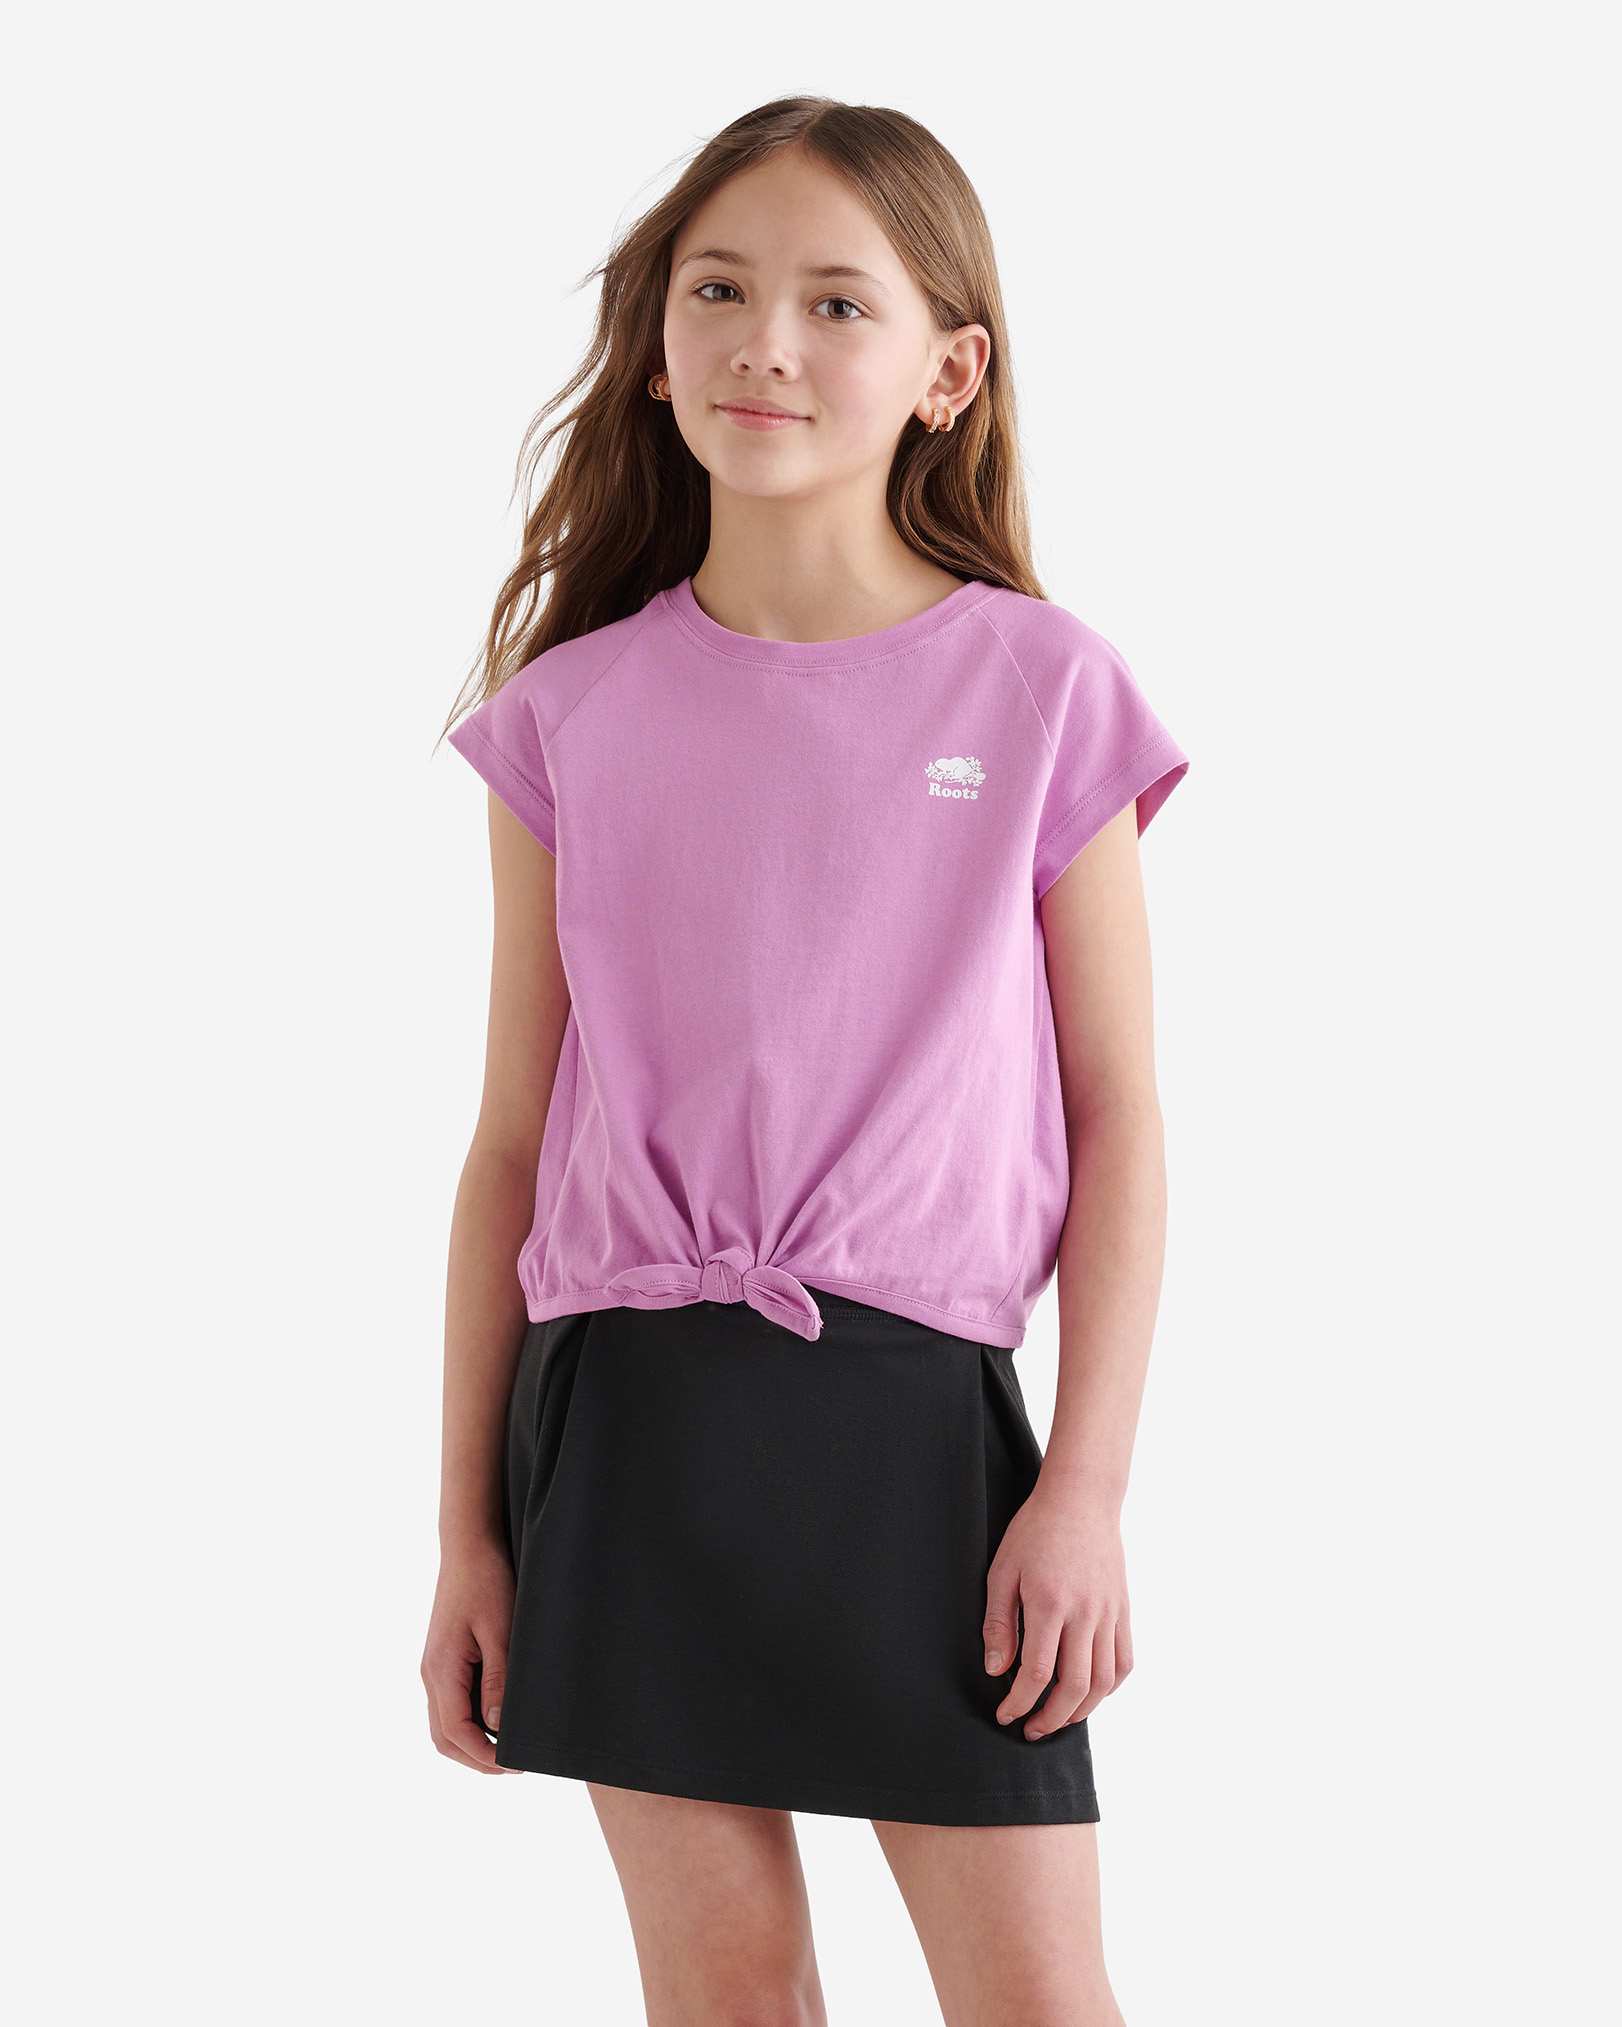 Roots Girl's Raglan Tie T-Shirt in Petal Purple